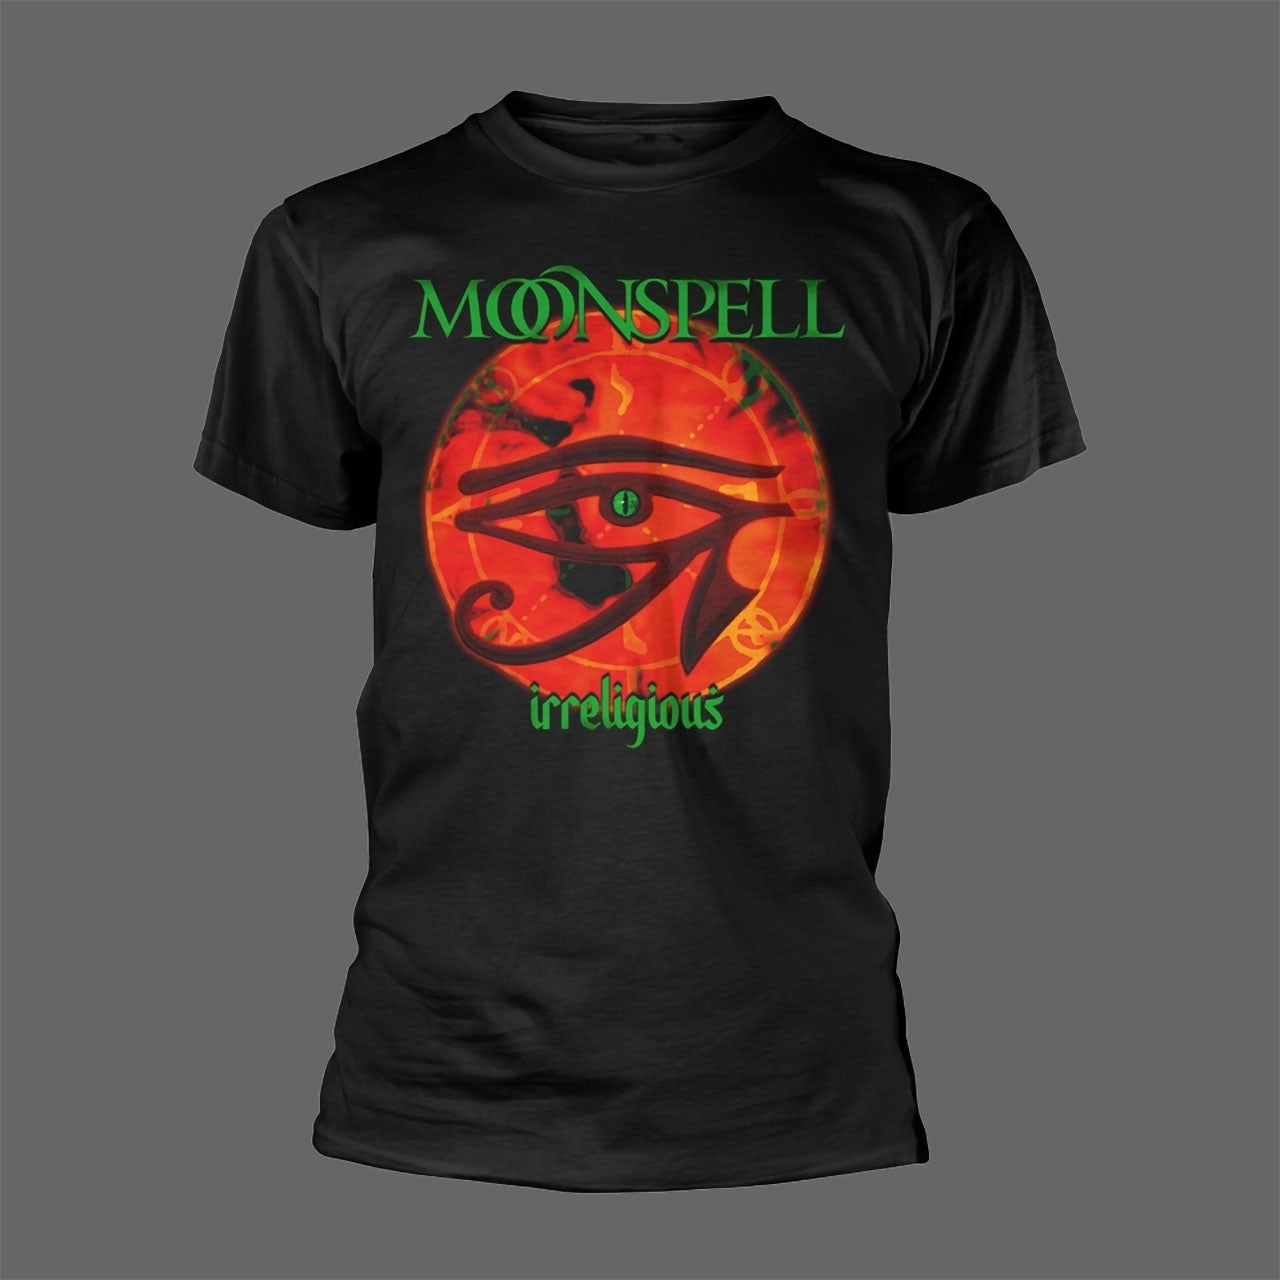 Moonspell - Irreligious (T-Shirt)